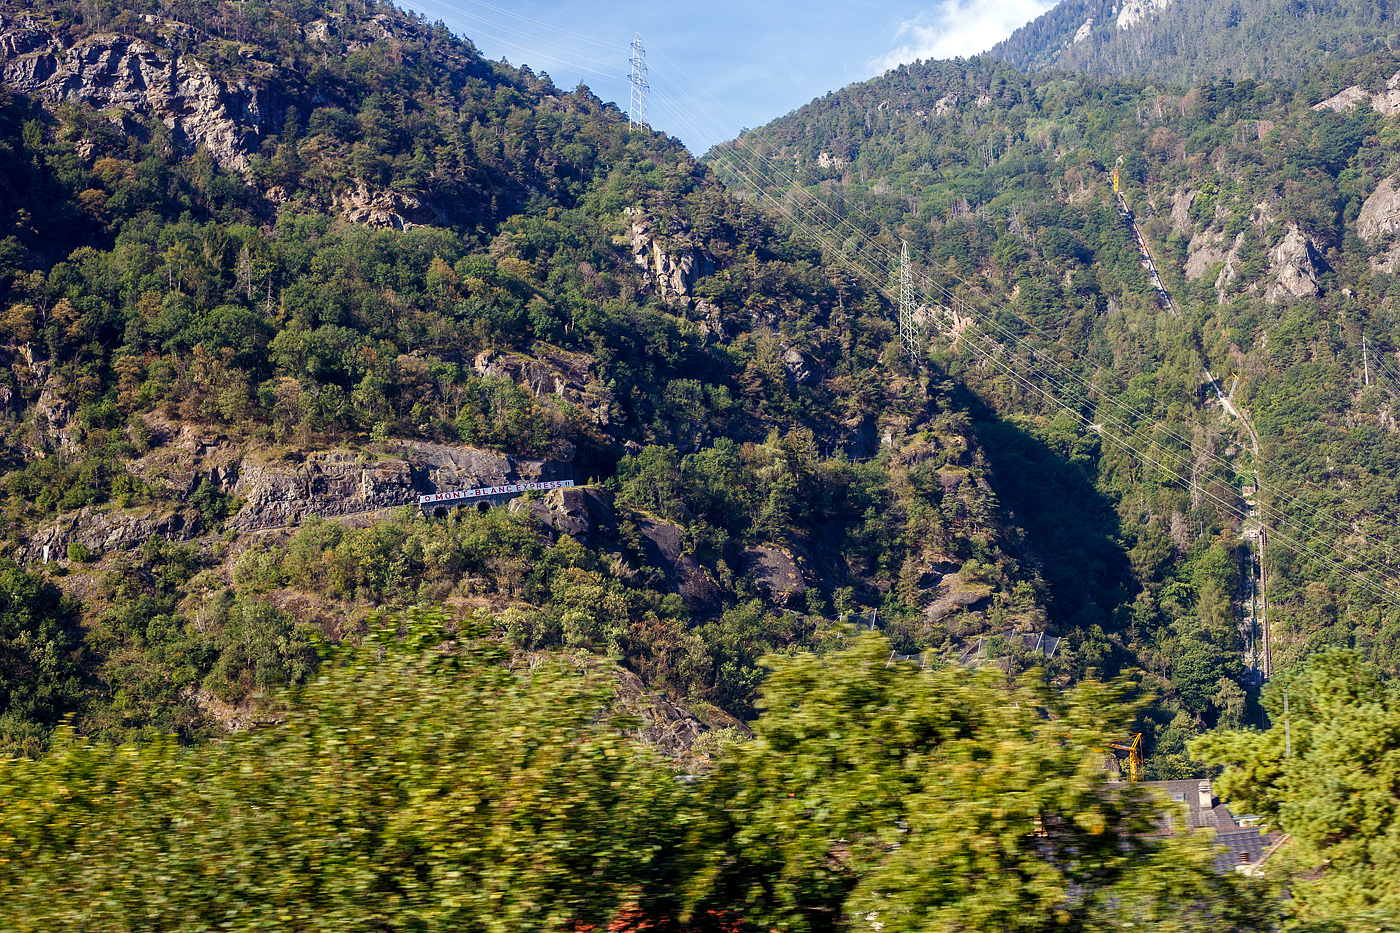 Die Strecke mit dem Mont-Blanc Express von Martigny via Vallorcine nach Chamonix hatten für unsere Reise am 07 bis 11 September 2023 auch ins Auge gefasst, aber dann wegen dem 125 Jubiläum der BVB dann doch erstmal auf ein anderes Mal verschoben.

Hier aus dem Zug (IC von Vevey nach Brig) heraus ein Blick auf die Strecke vom der Martigny-Châtelard-Bahn / Mont-Blanc Express. Die 18 km lange meterspurige Bahnstrecke mit Zahnstangenabschnitten, von Martigny zum Grenzbahnhof Le Châtelard-Frontière, wird heute von der Transports de Martigny et Régions (TMR). Die MC fusionierte 2001 mit der Martigny-Orsières-Bahn (MO) zu den Transports de Martigny et Régions (TMR).